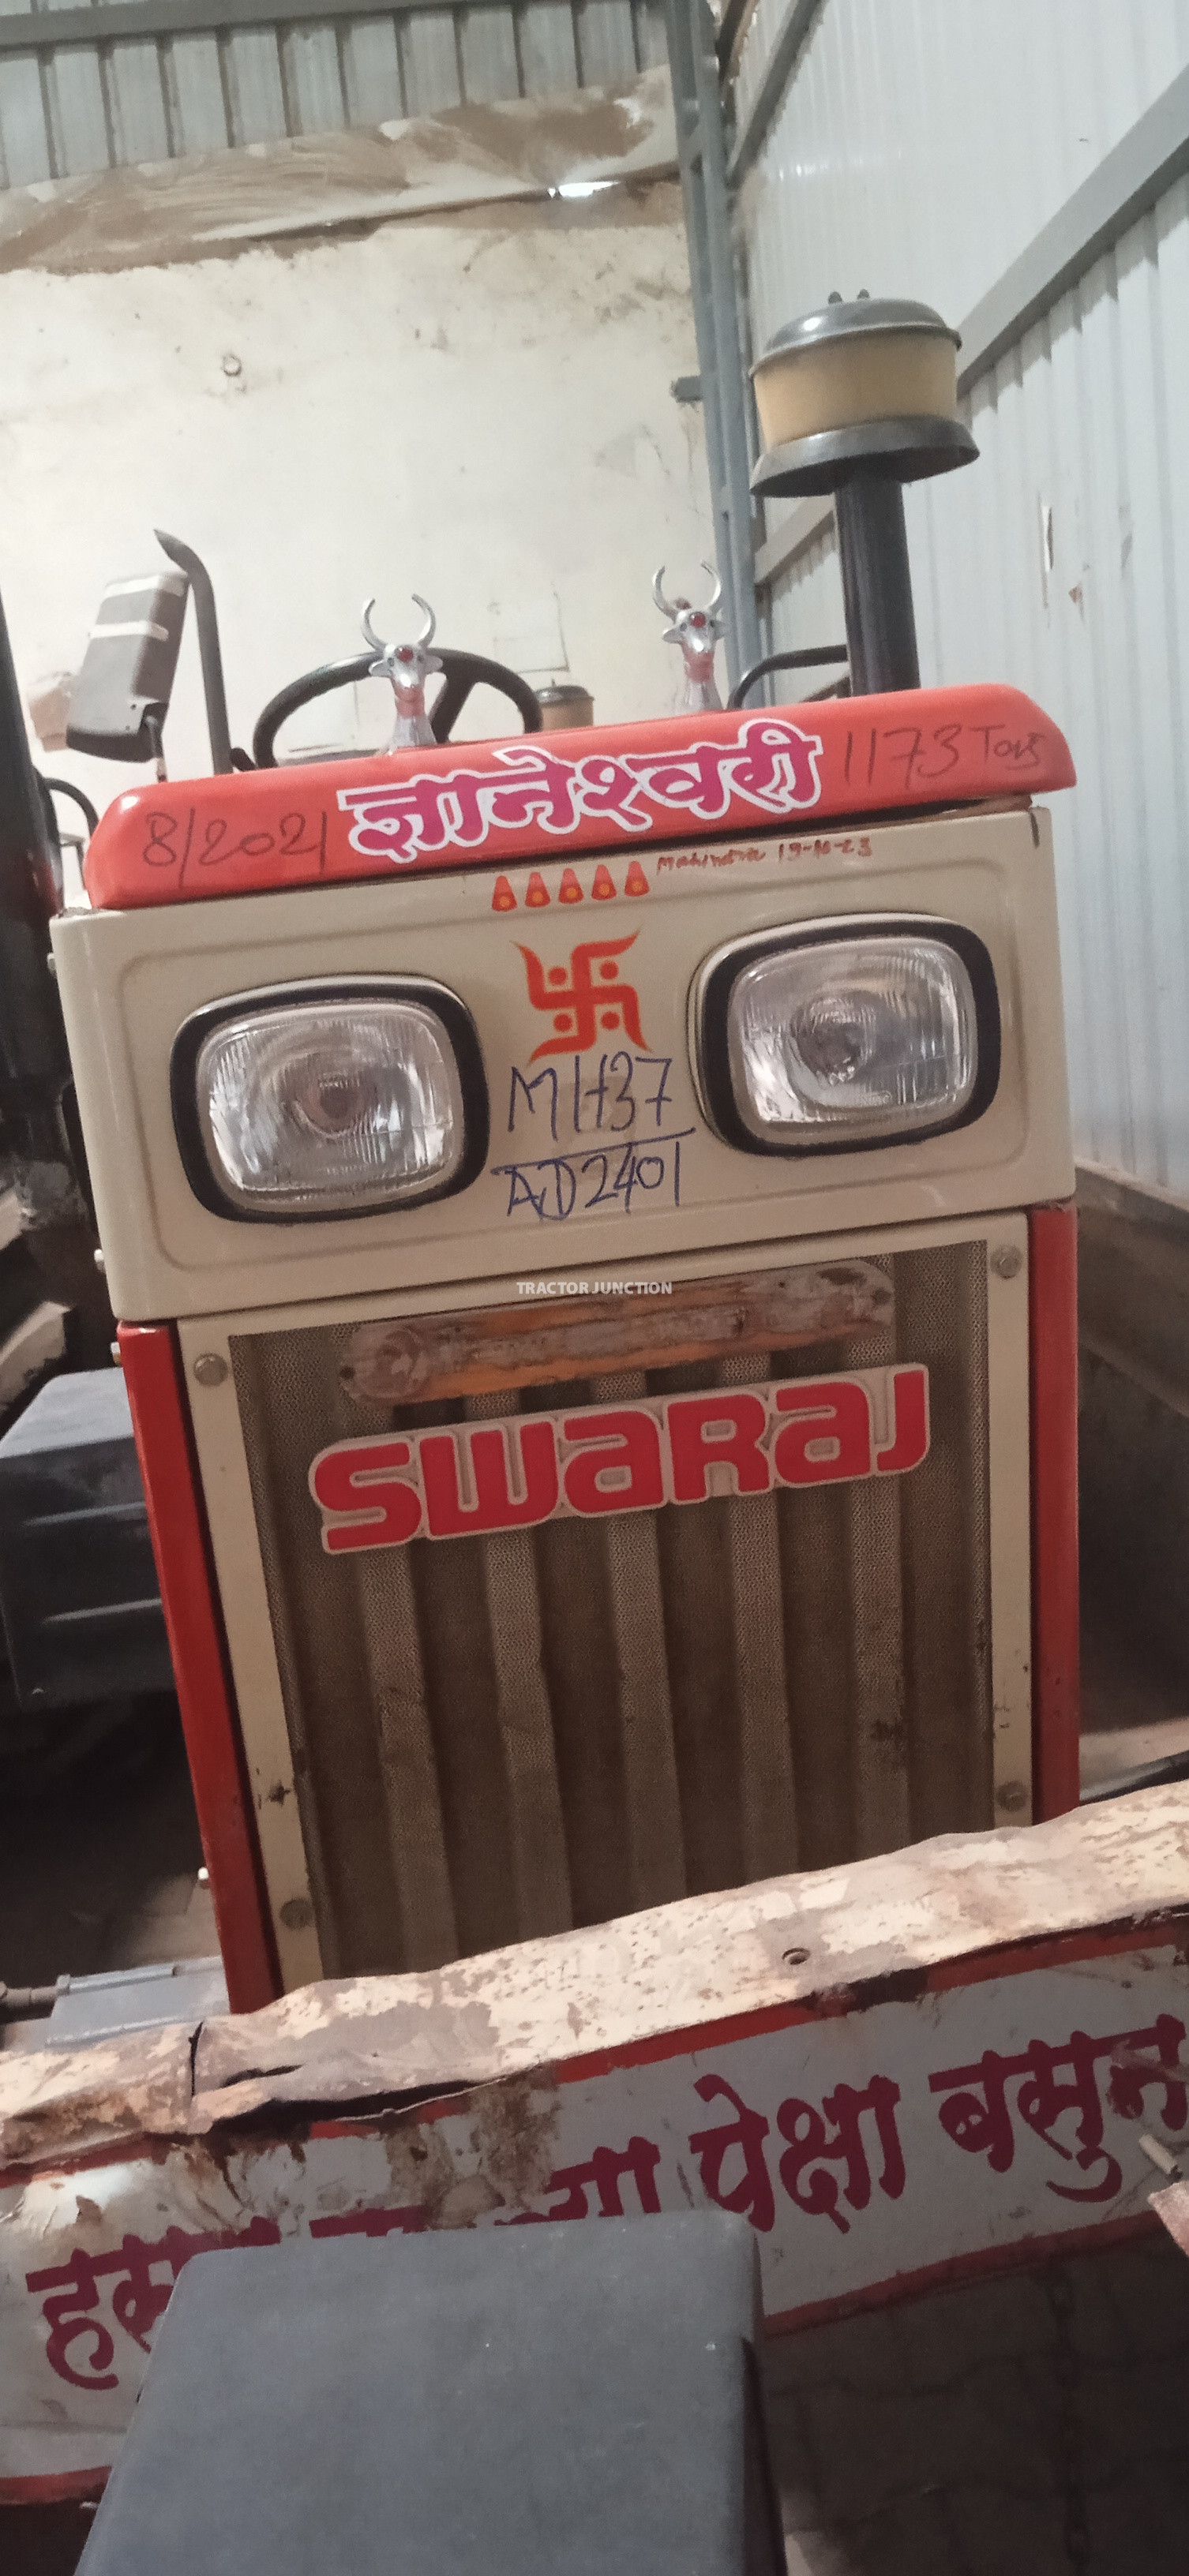 Swaraj 744 XT